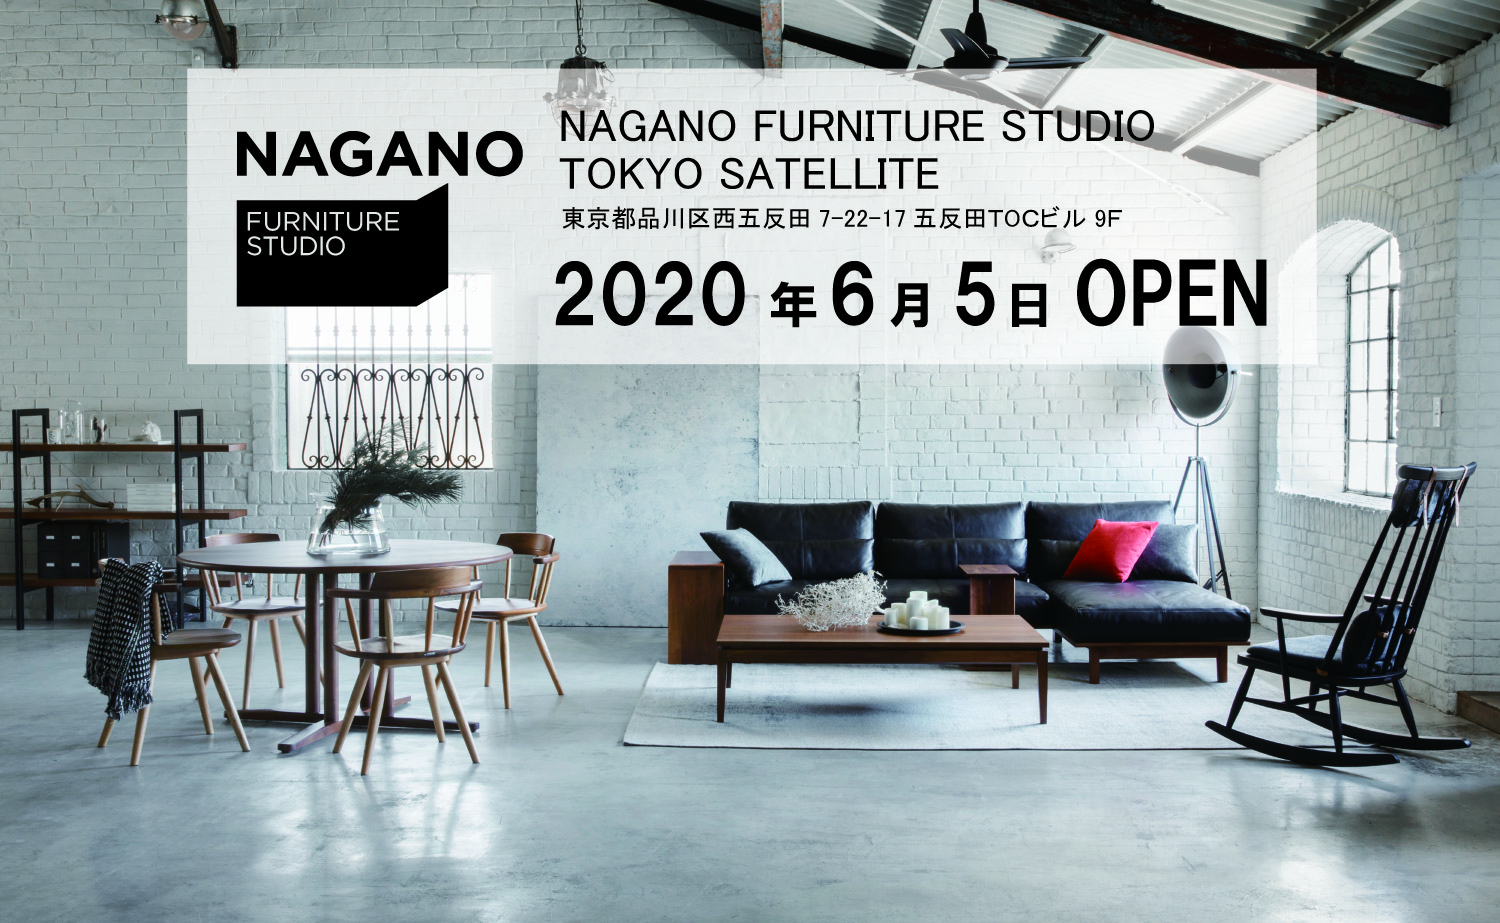 NAGANO FURNITURE STUDIO TOKYO SATELLITE オープンのお知らせ